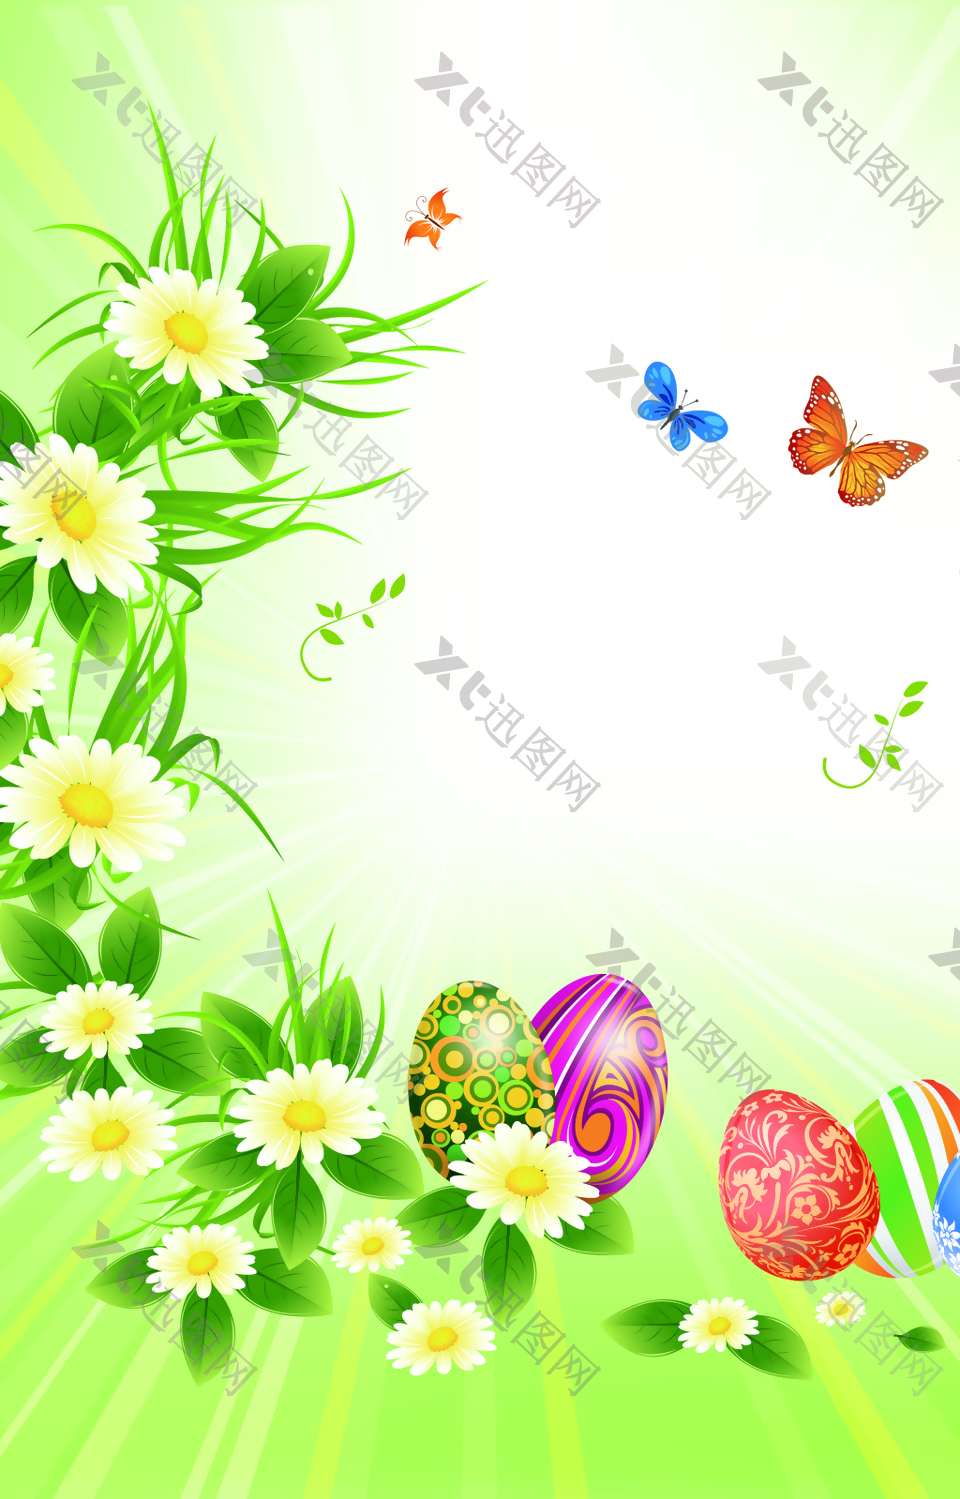 花朵边的蝴蝶和圆球背景素材